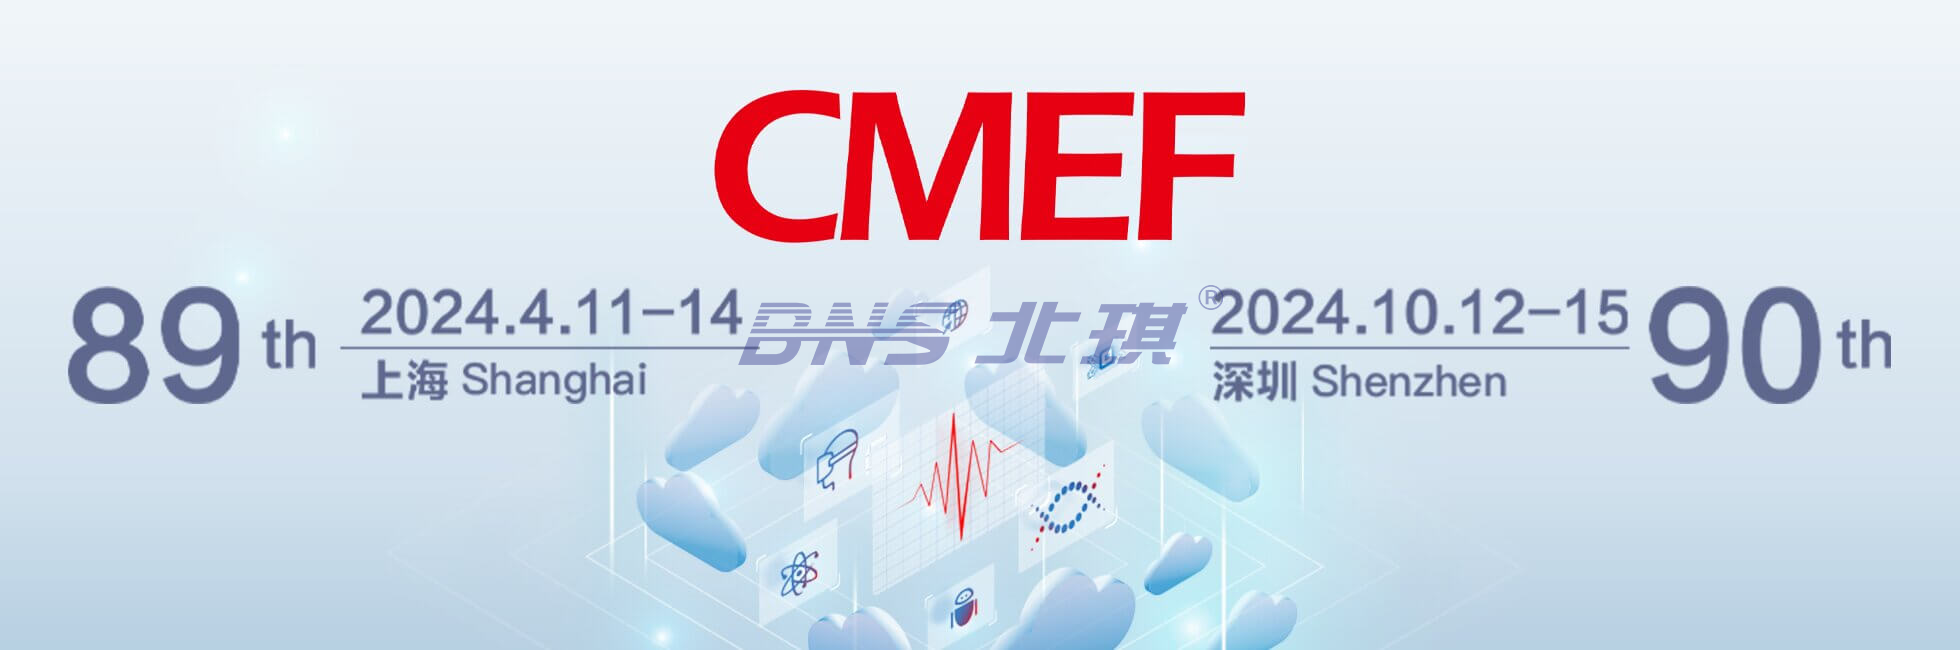 北琪医疗参加2024春季中国国际医疗器械博览会 (CMEF)